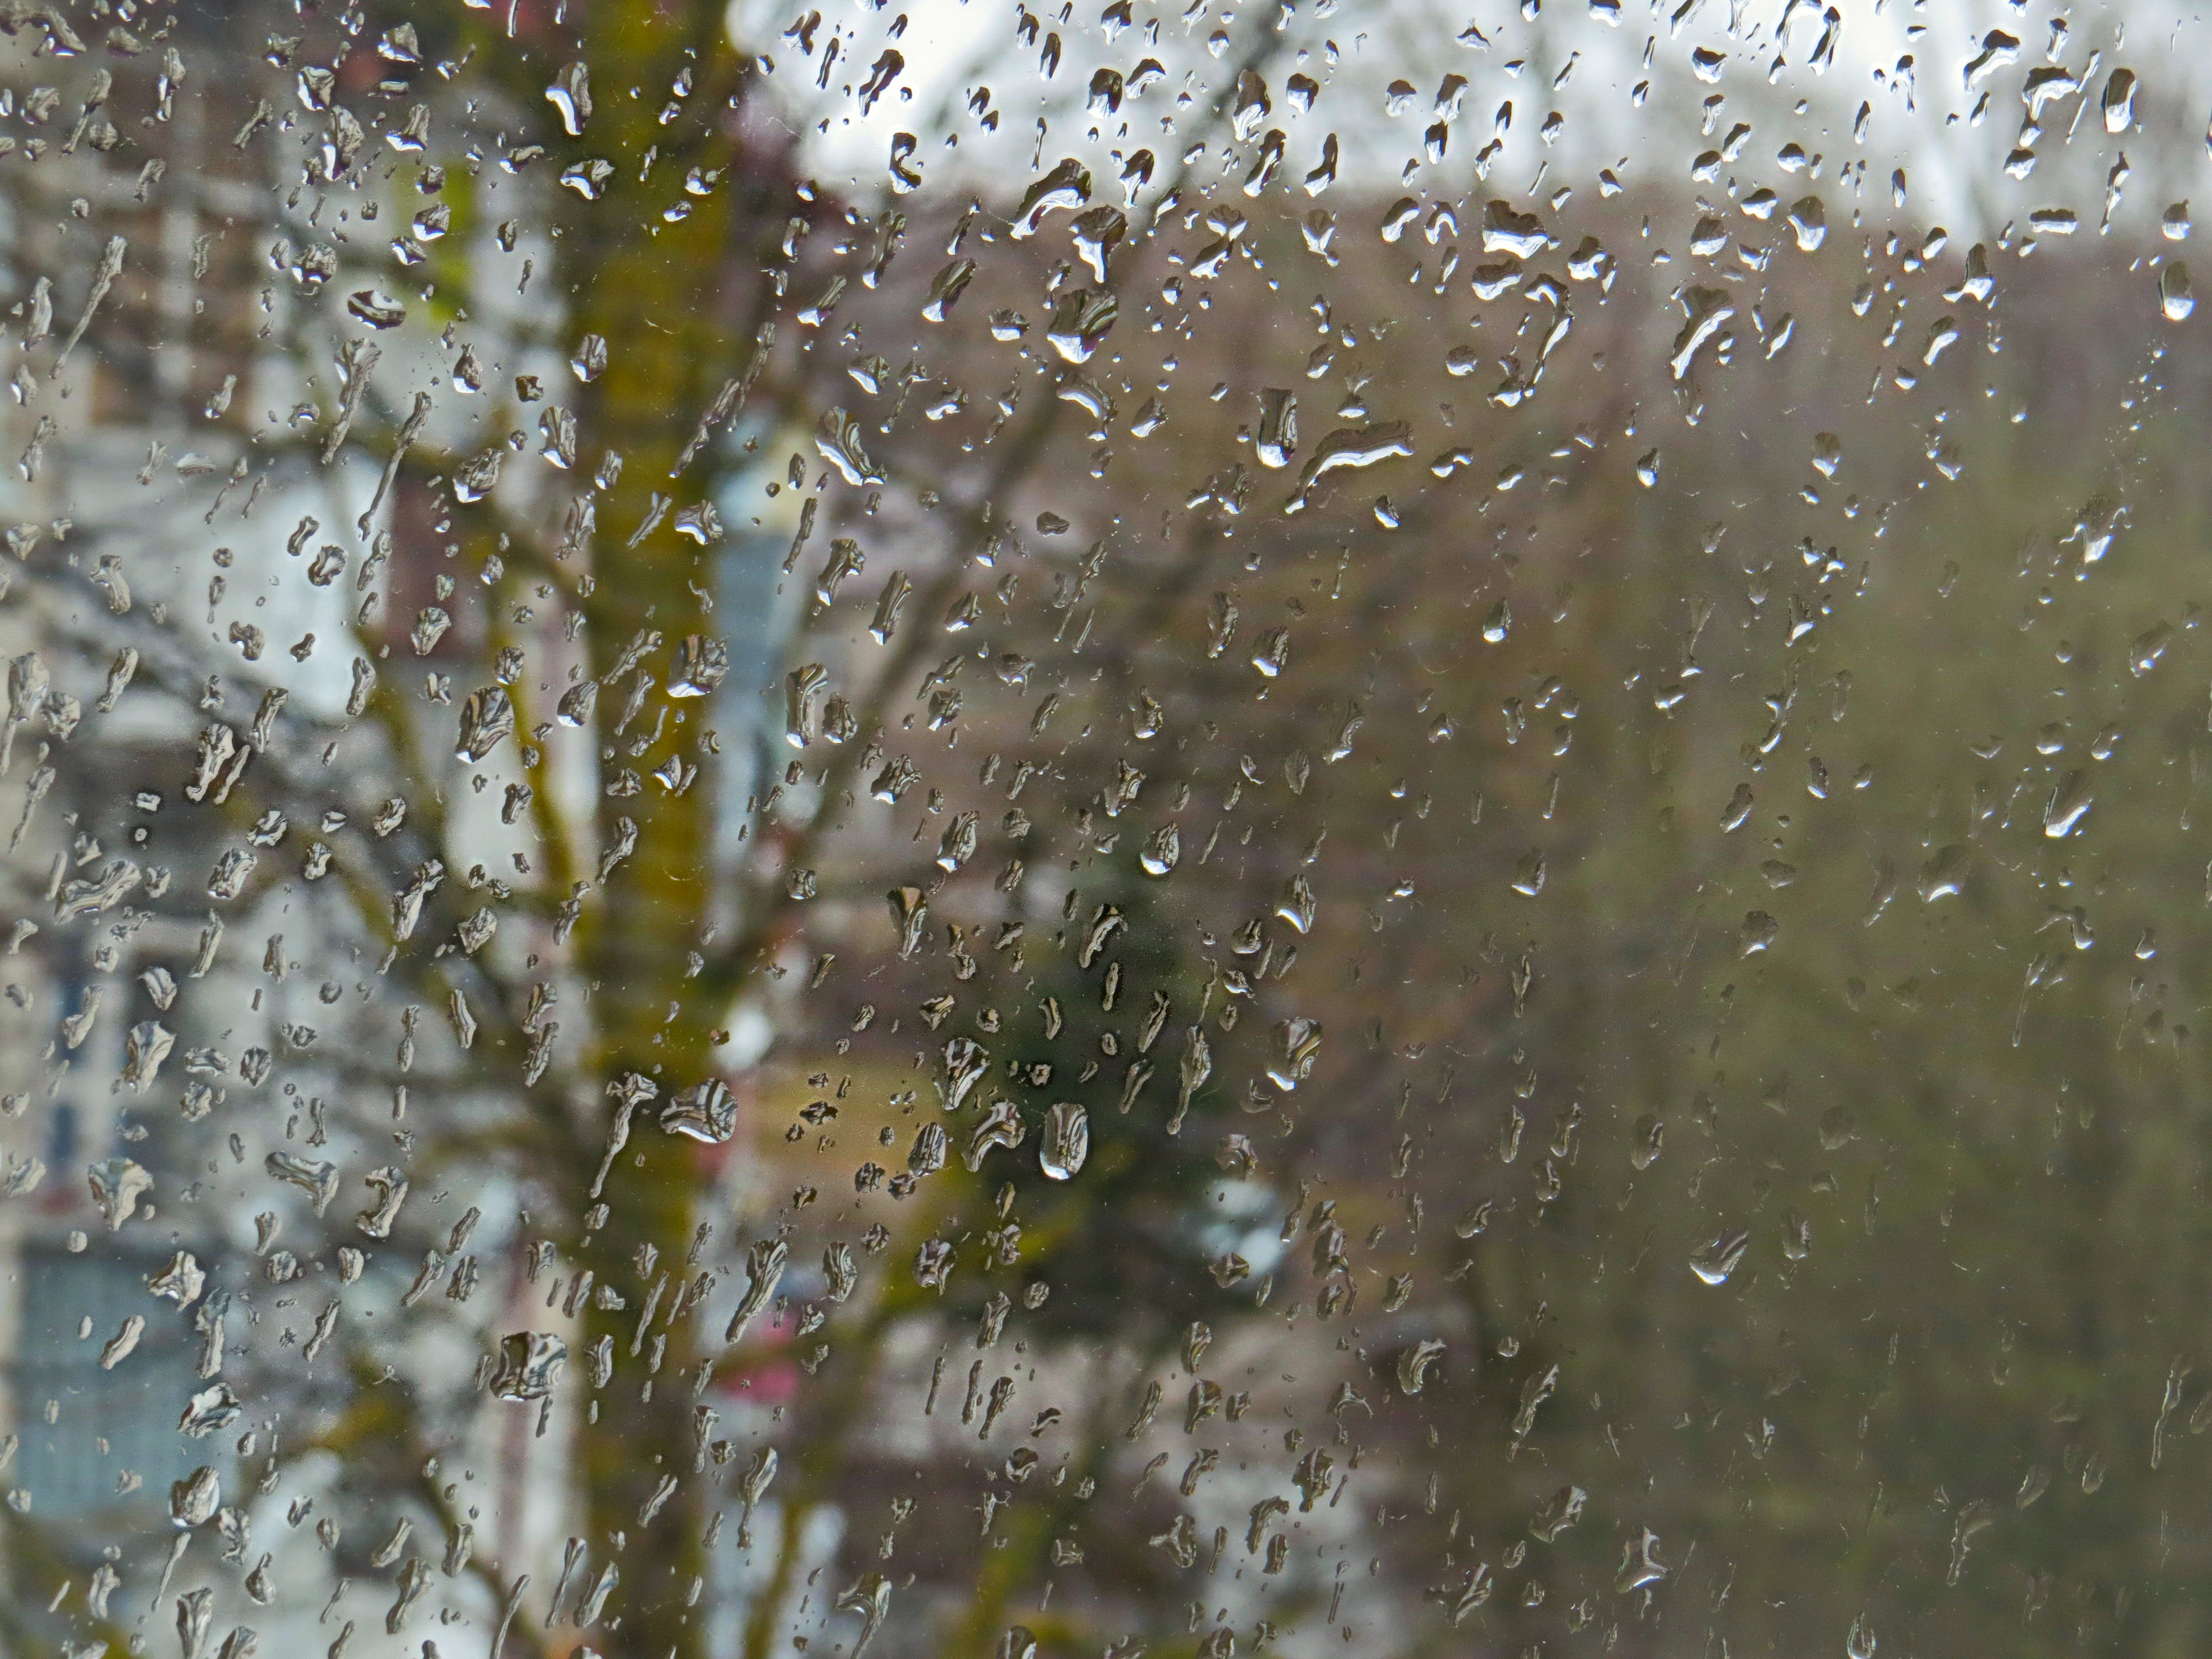 Фото с дождем за окном